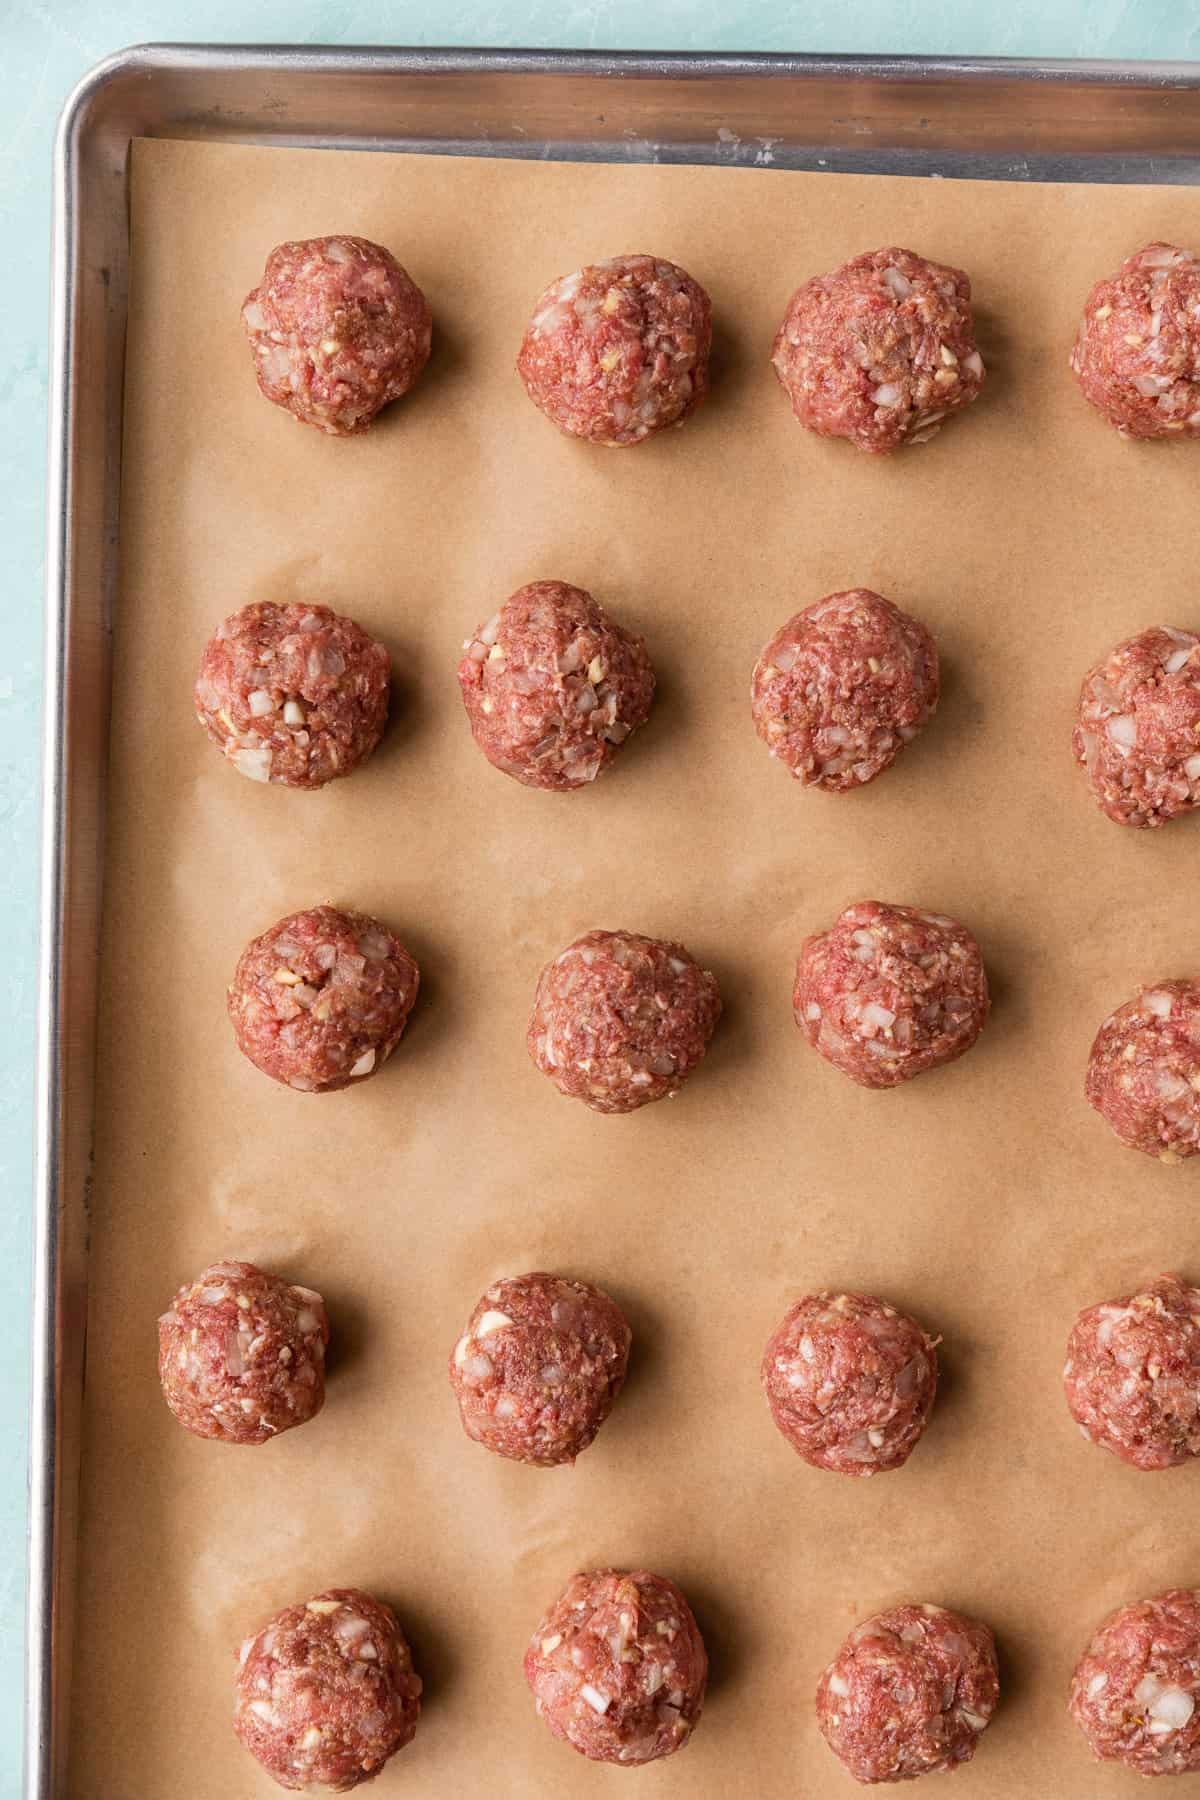 Meatballs formed in a baking sheet.